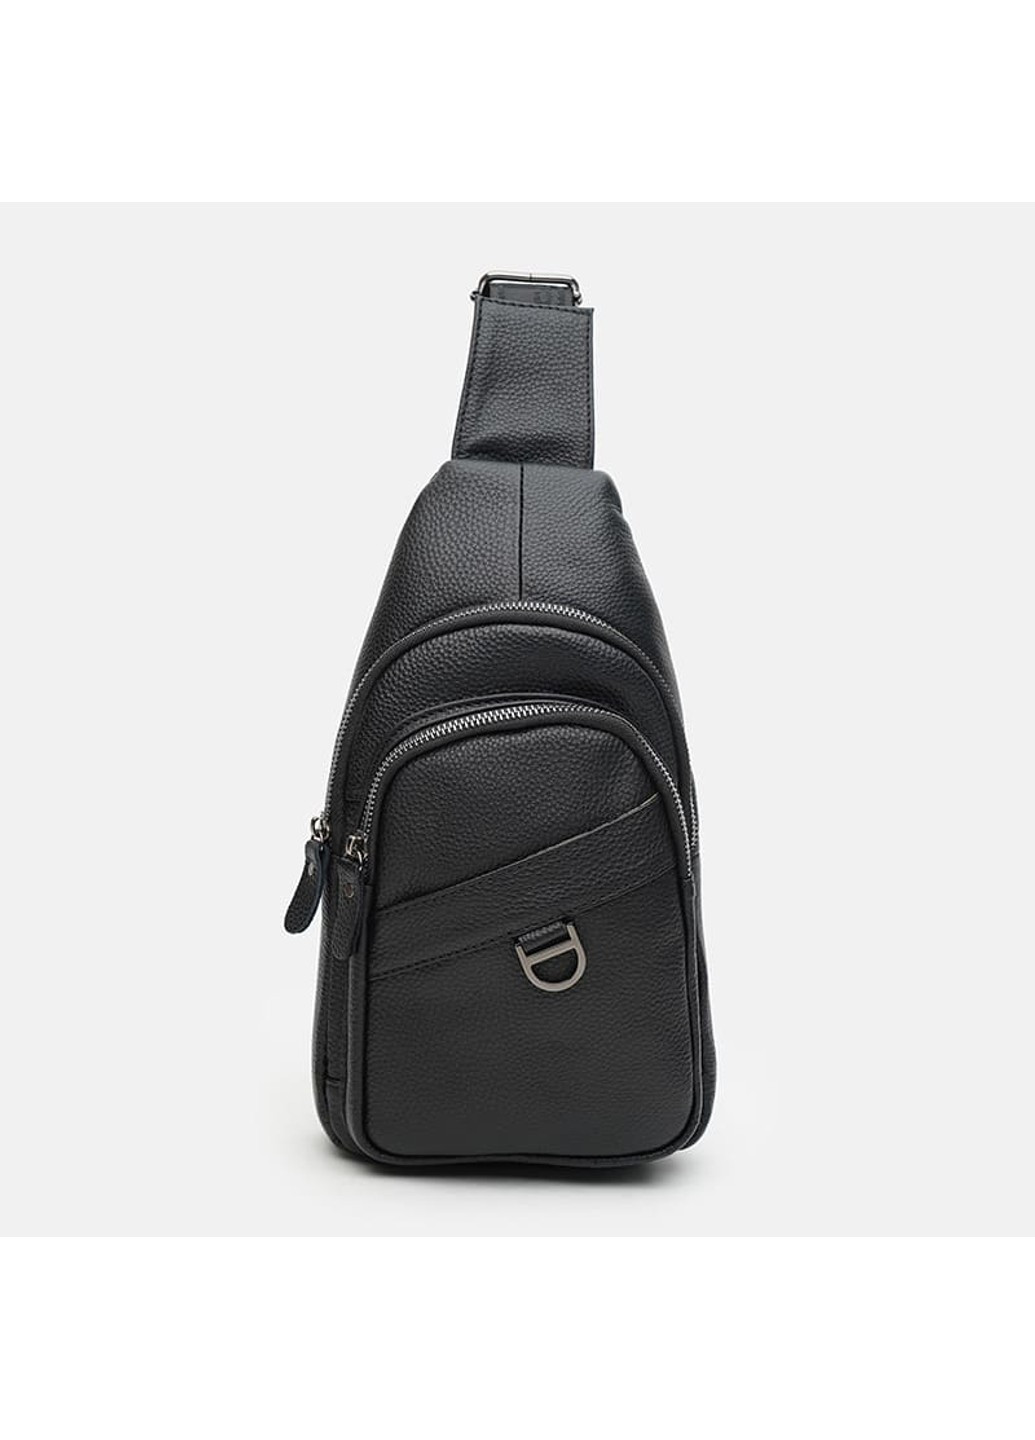 Мужская кожаная сумка K14039bl-black Keizer (266143485)